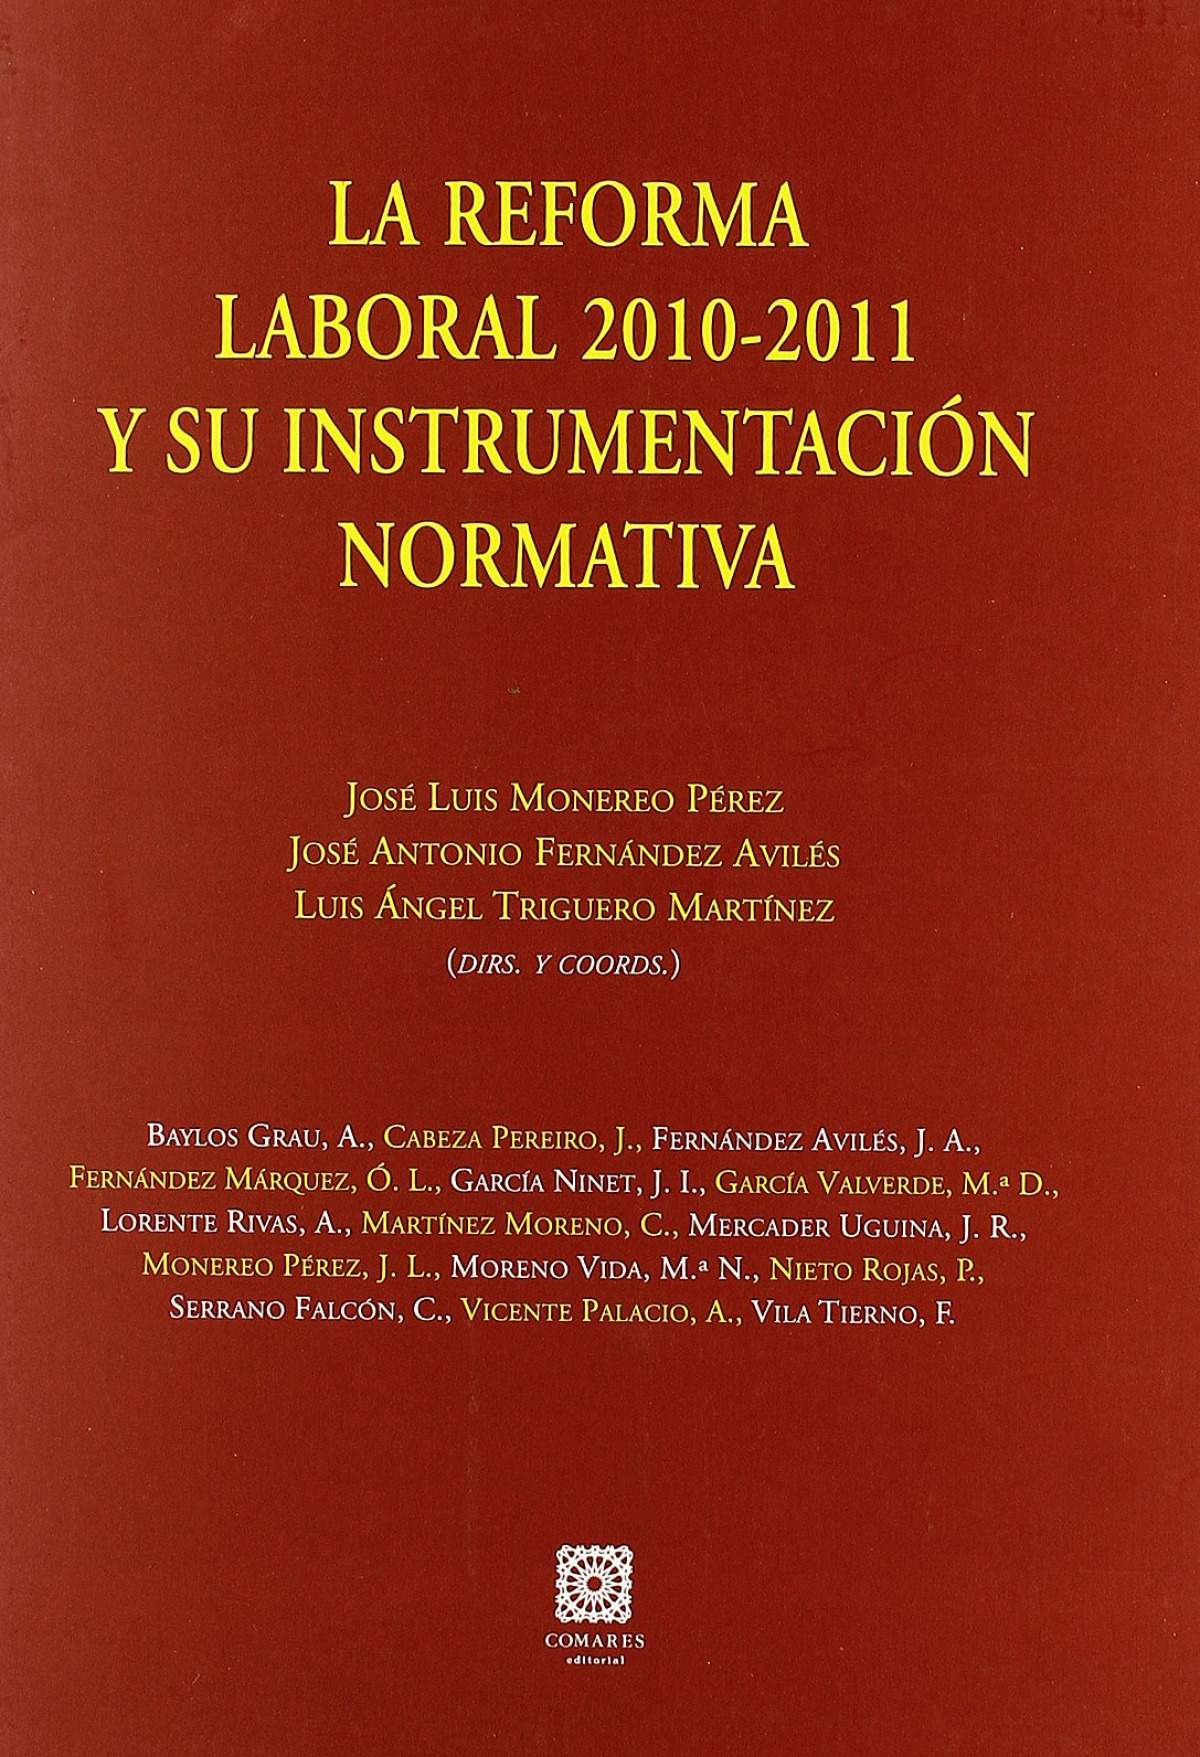 La reforma laboral en España - Monereo Pérez, José Luis